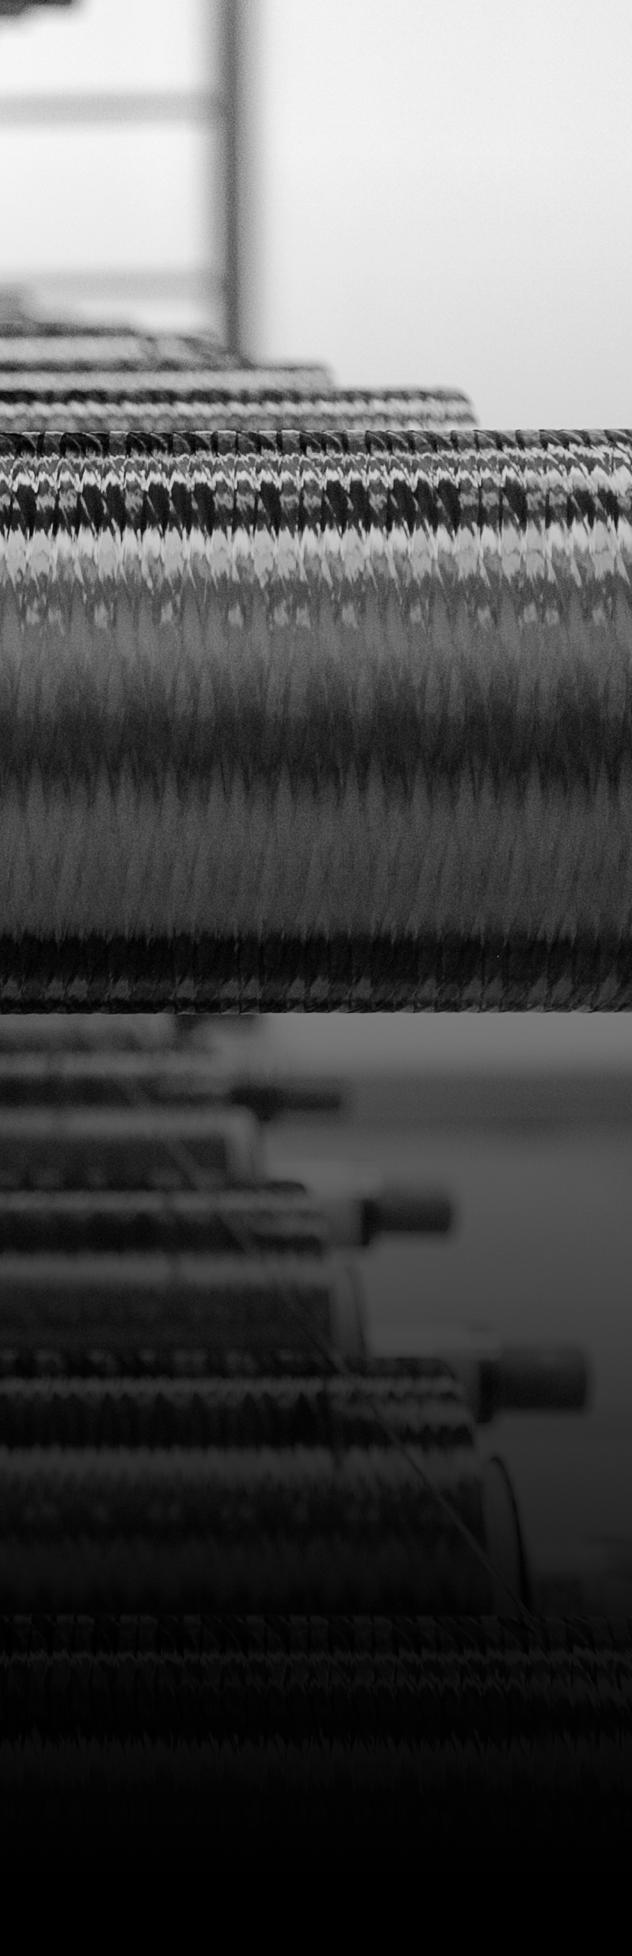 Aluminum Vapor Deposited Fiber (Av) Weave Inside a vacuum-sealed chamber, the micro fiber is coated with aluminum vapor. This AV fiber enhances stability, to help achieve the desired EI targets.